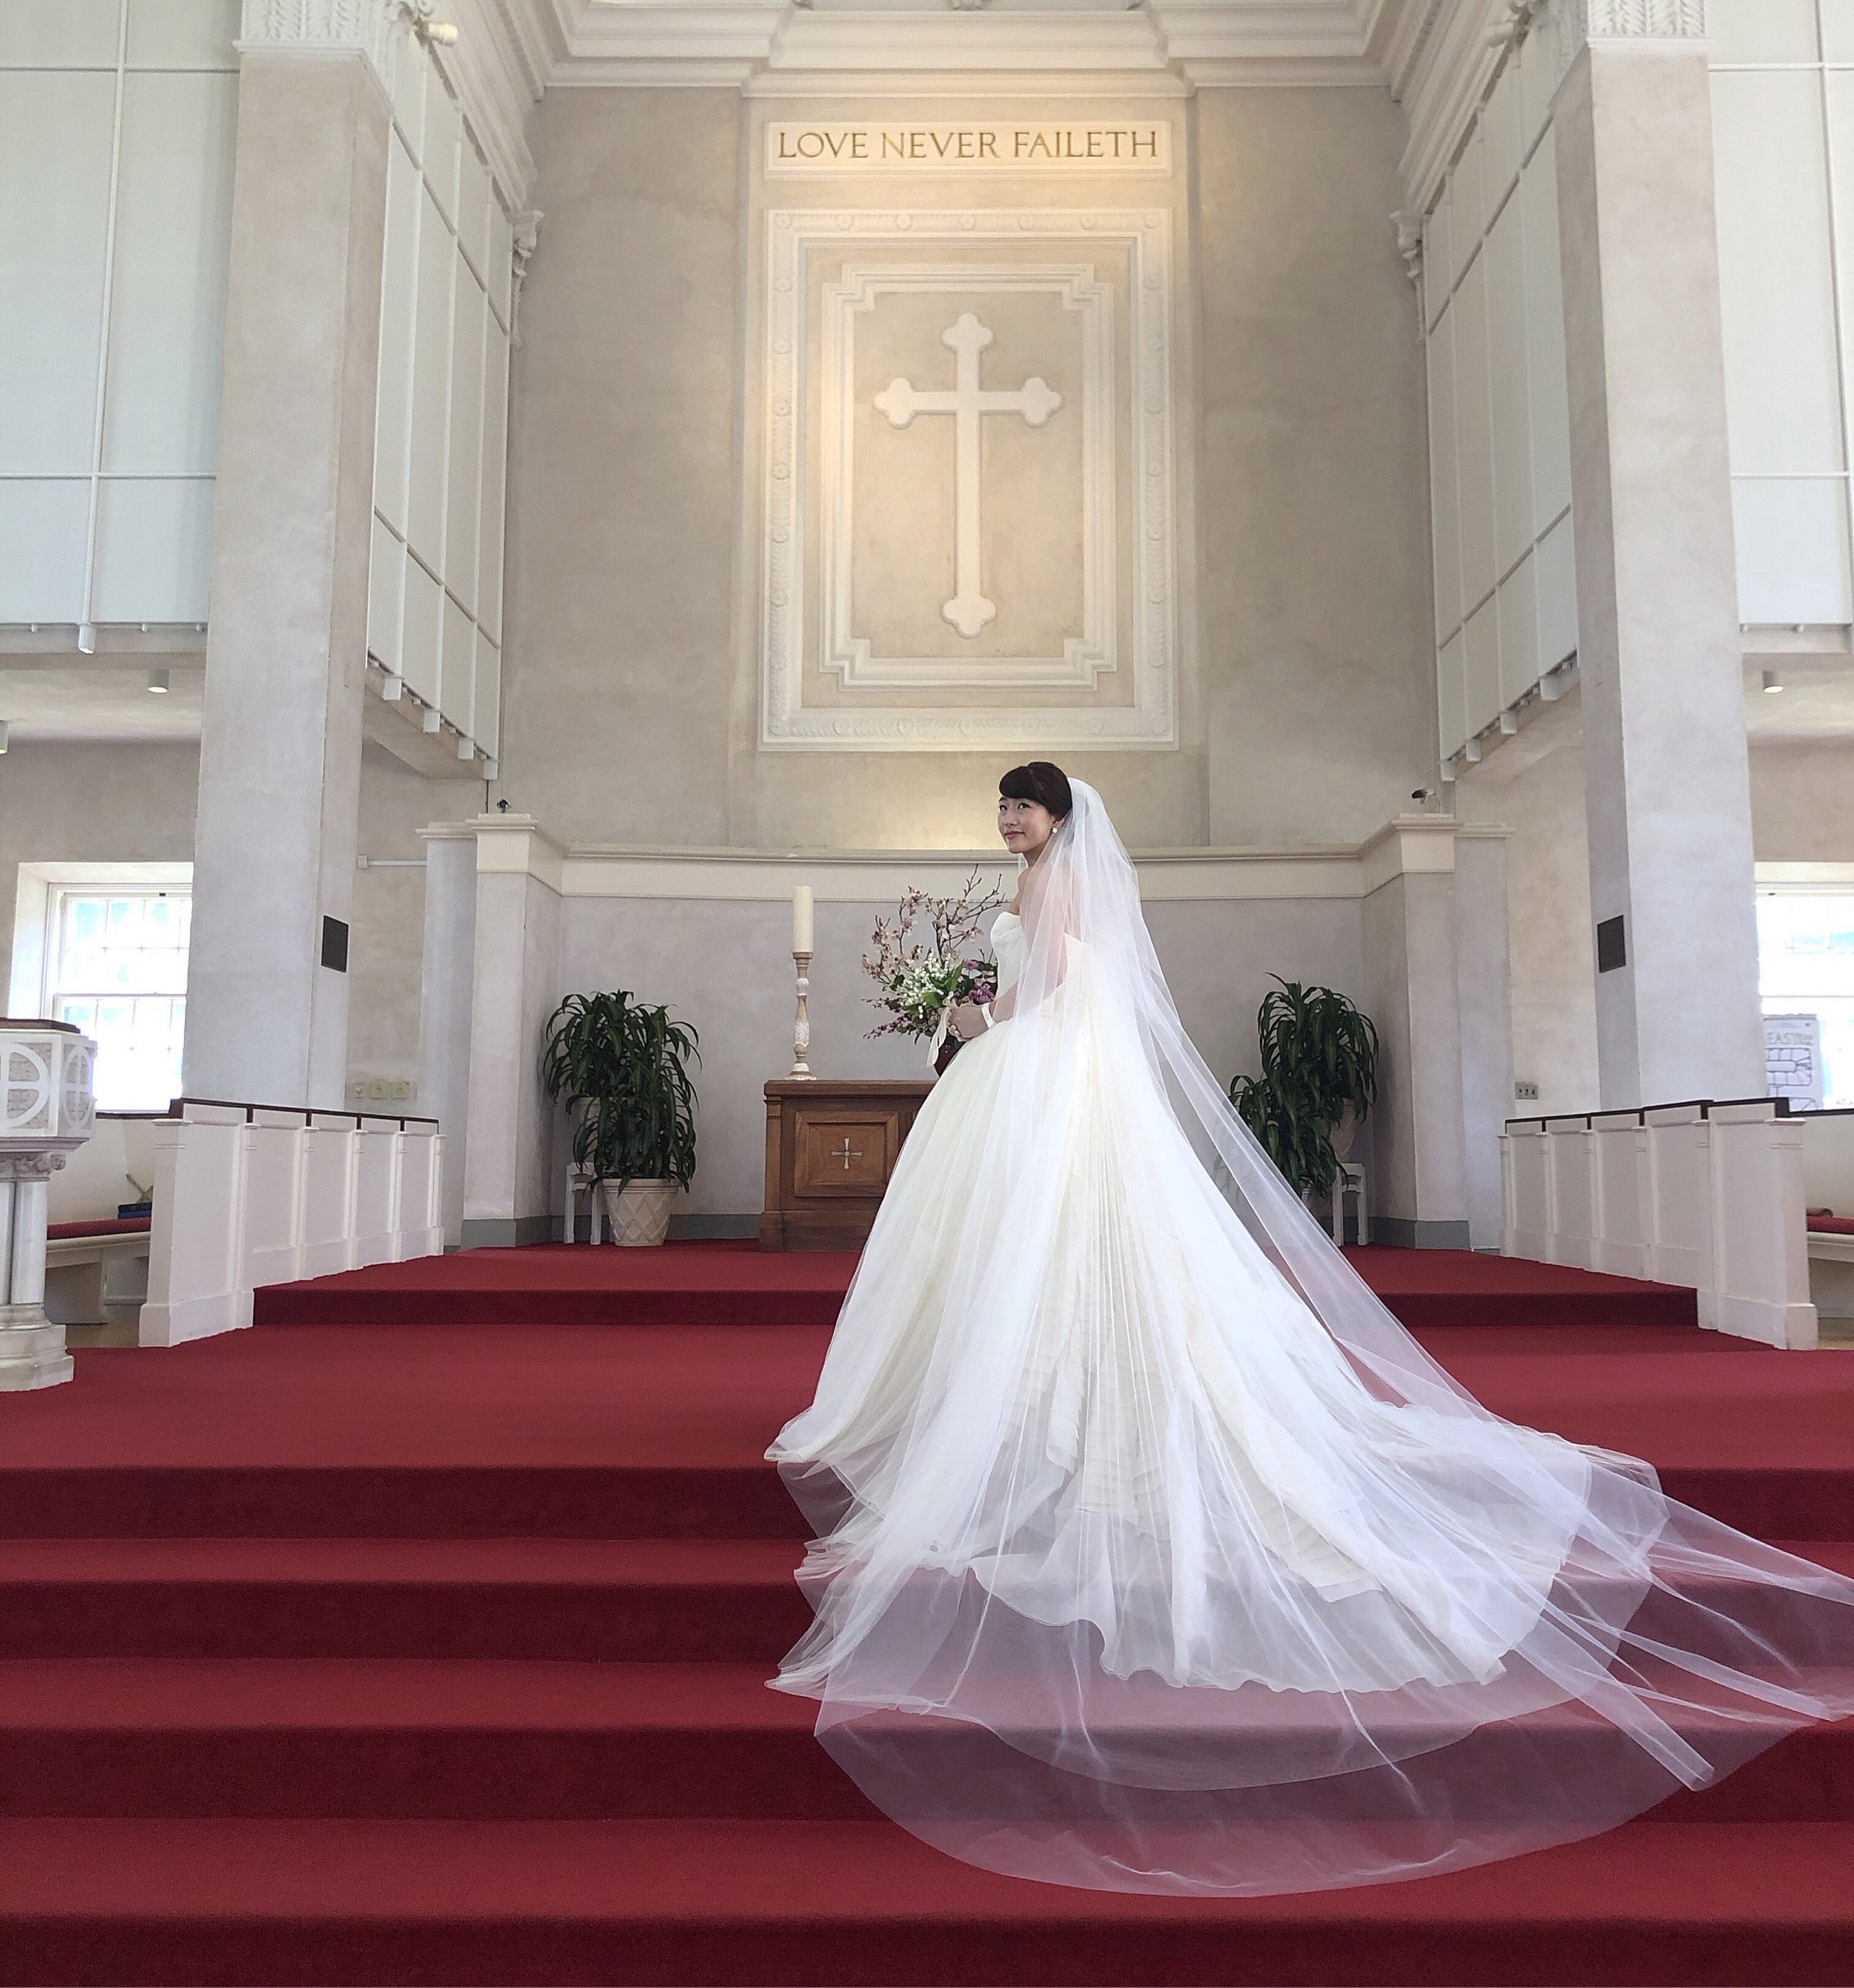 ハワイの教会 セントラルユニオン大聖堂 Blog 公式 Cheers Wedding チアーズウェディング ハワイウェディング 結婚式 プロデュース